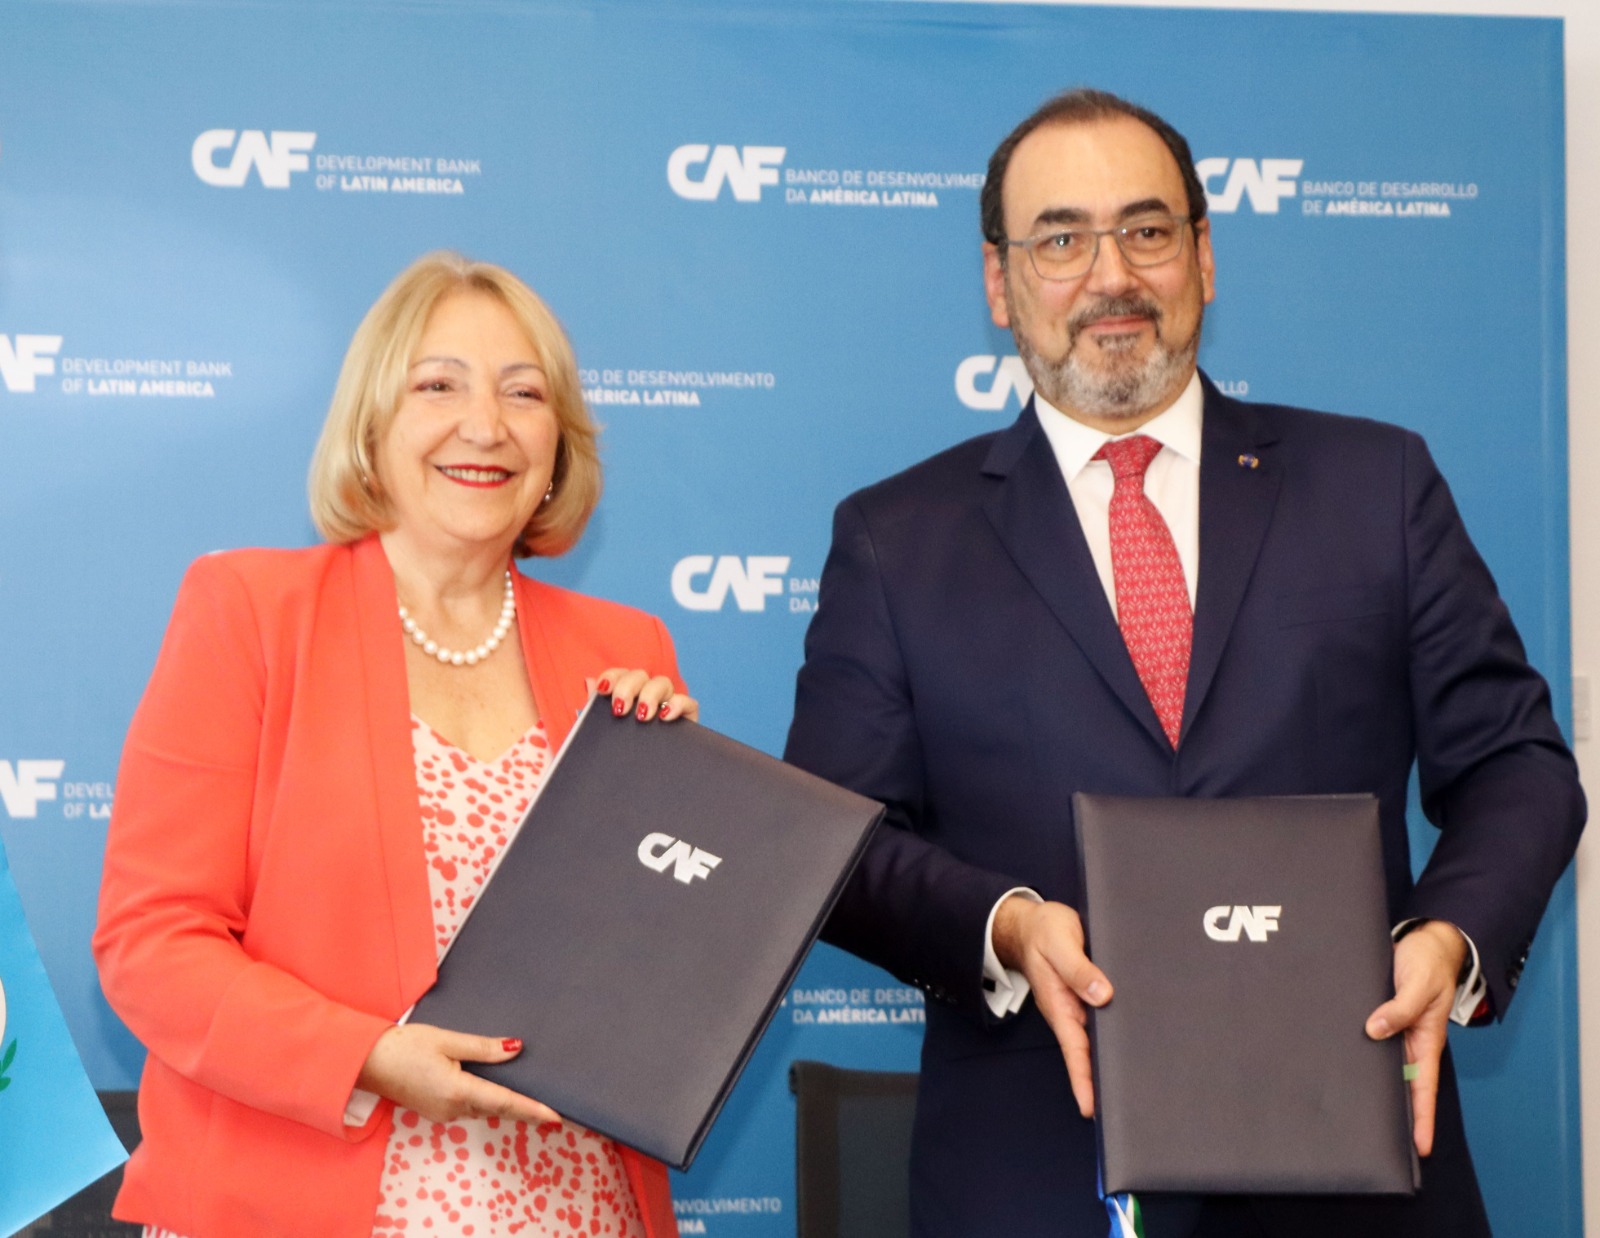 CAF promoverá el fortalecimiento de los congresos de la región